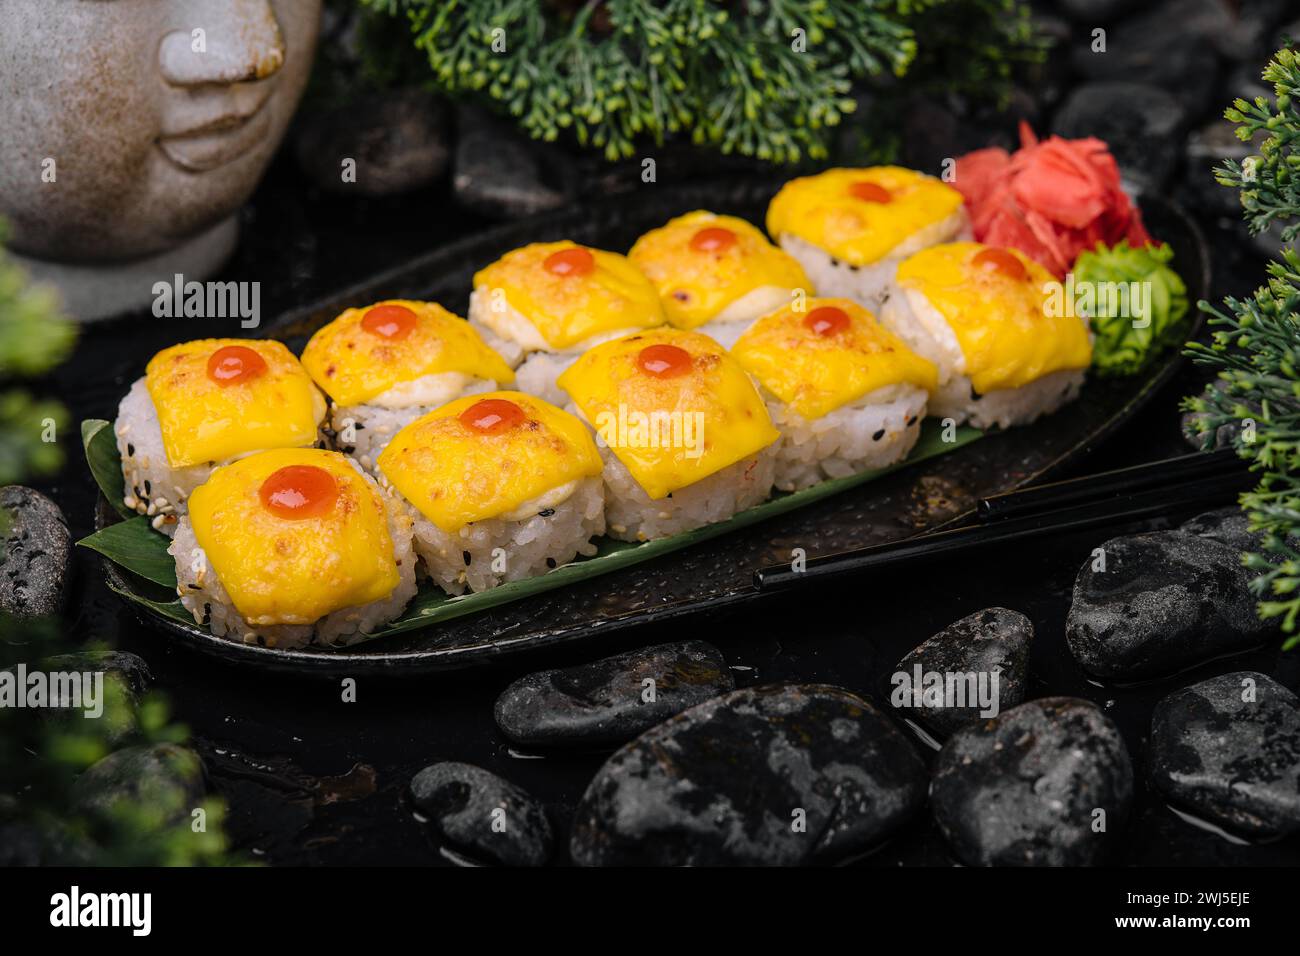 Sushi avec fromage cheddar sur plateau noir avec curry jaune Banque D'Images